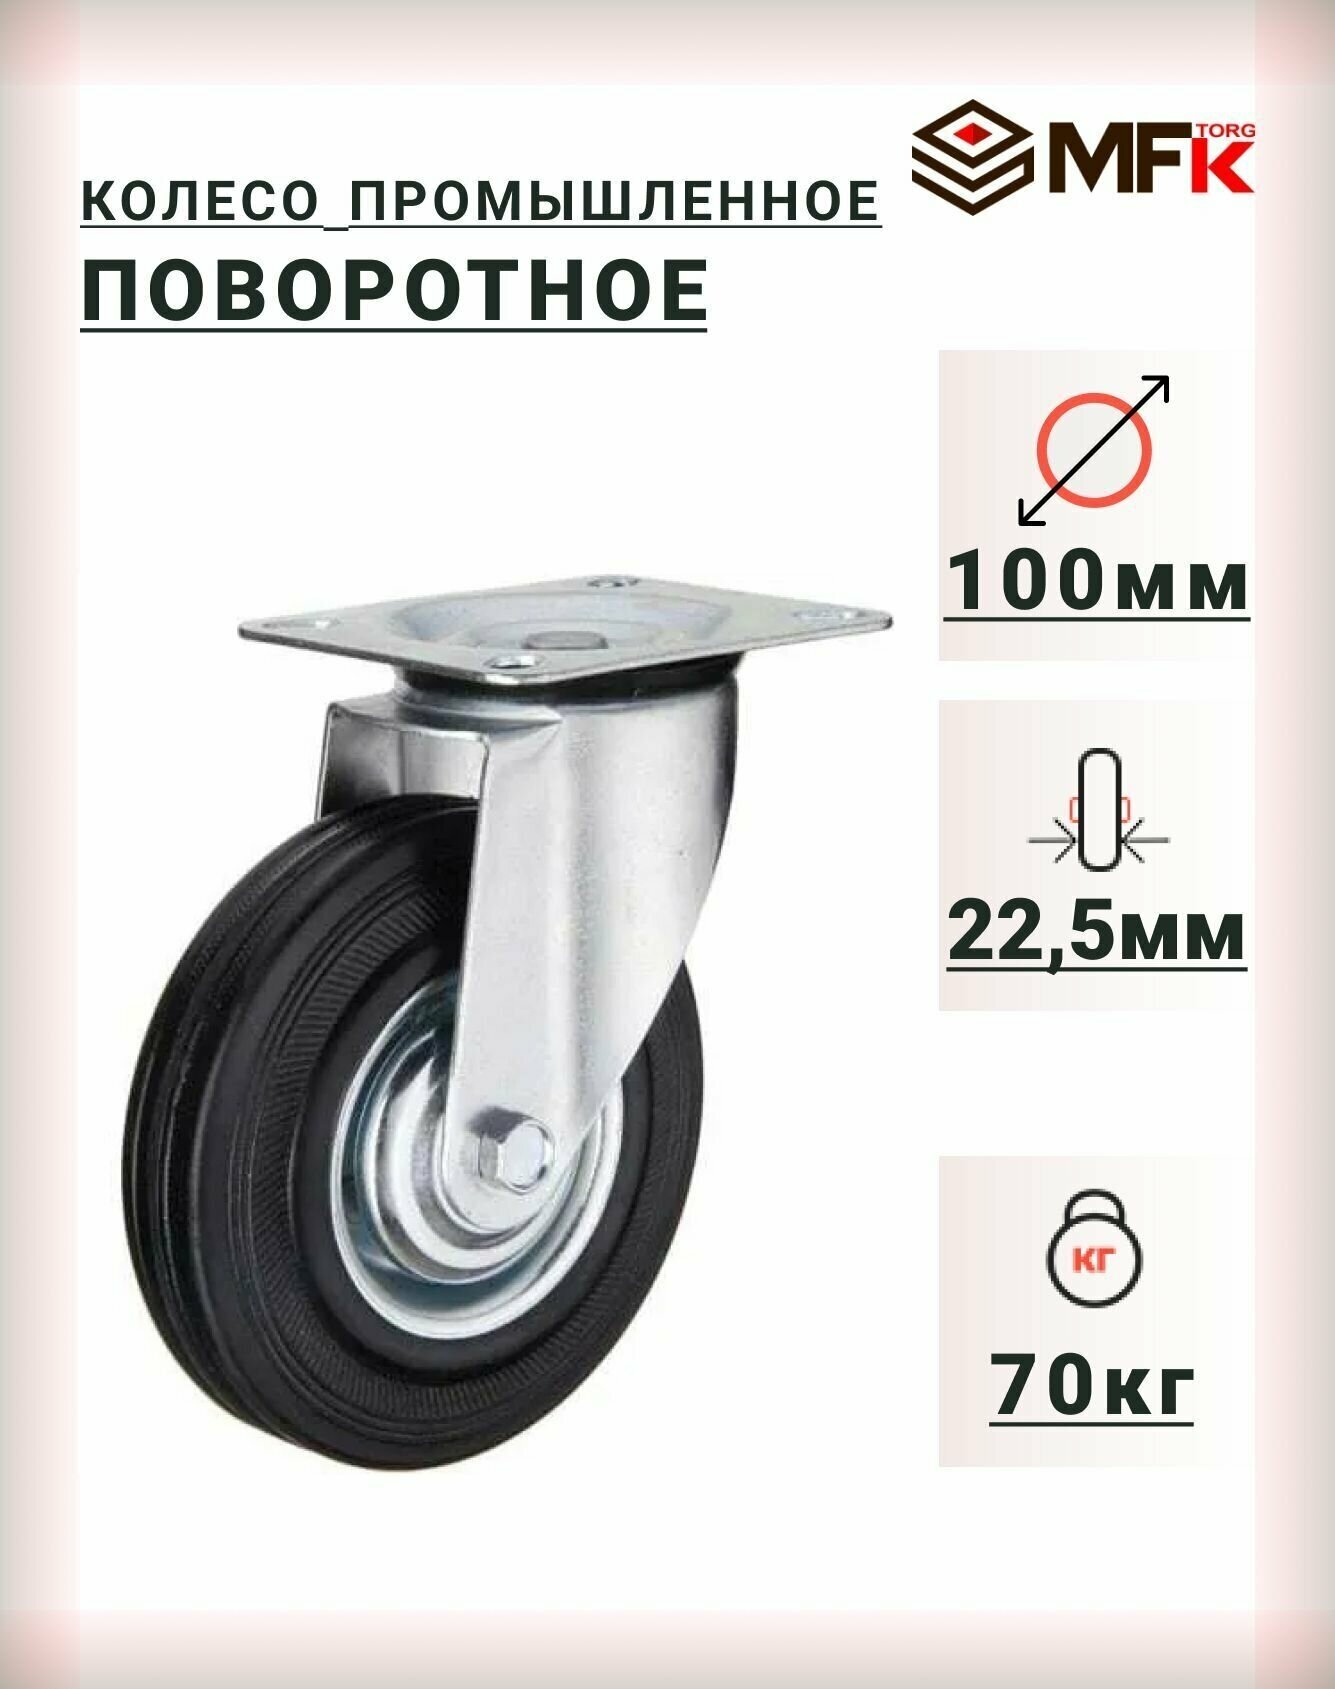 Колесо промышленное поворотное 100мм (SC42) для тележек мфк-торг 4001100, 2 шт. - фотография № 1